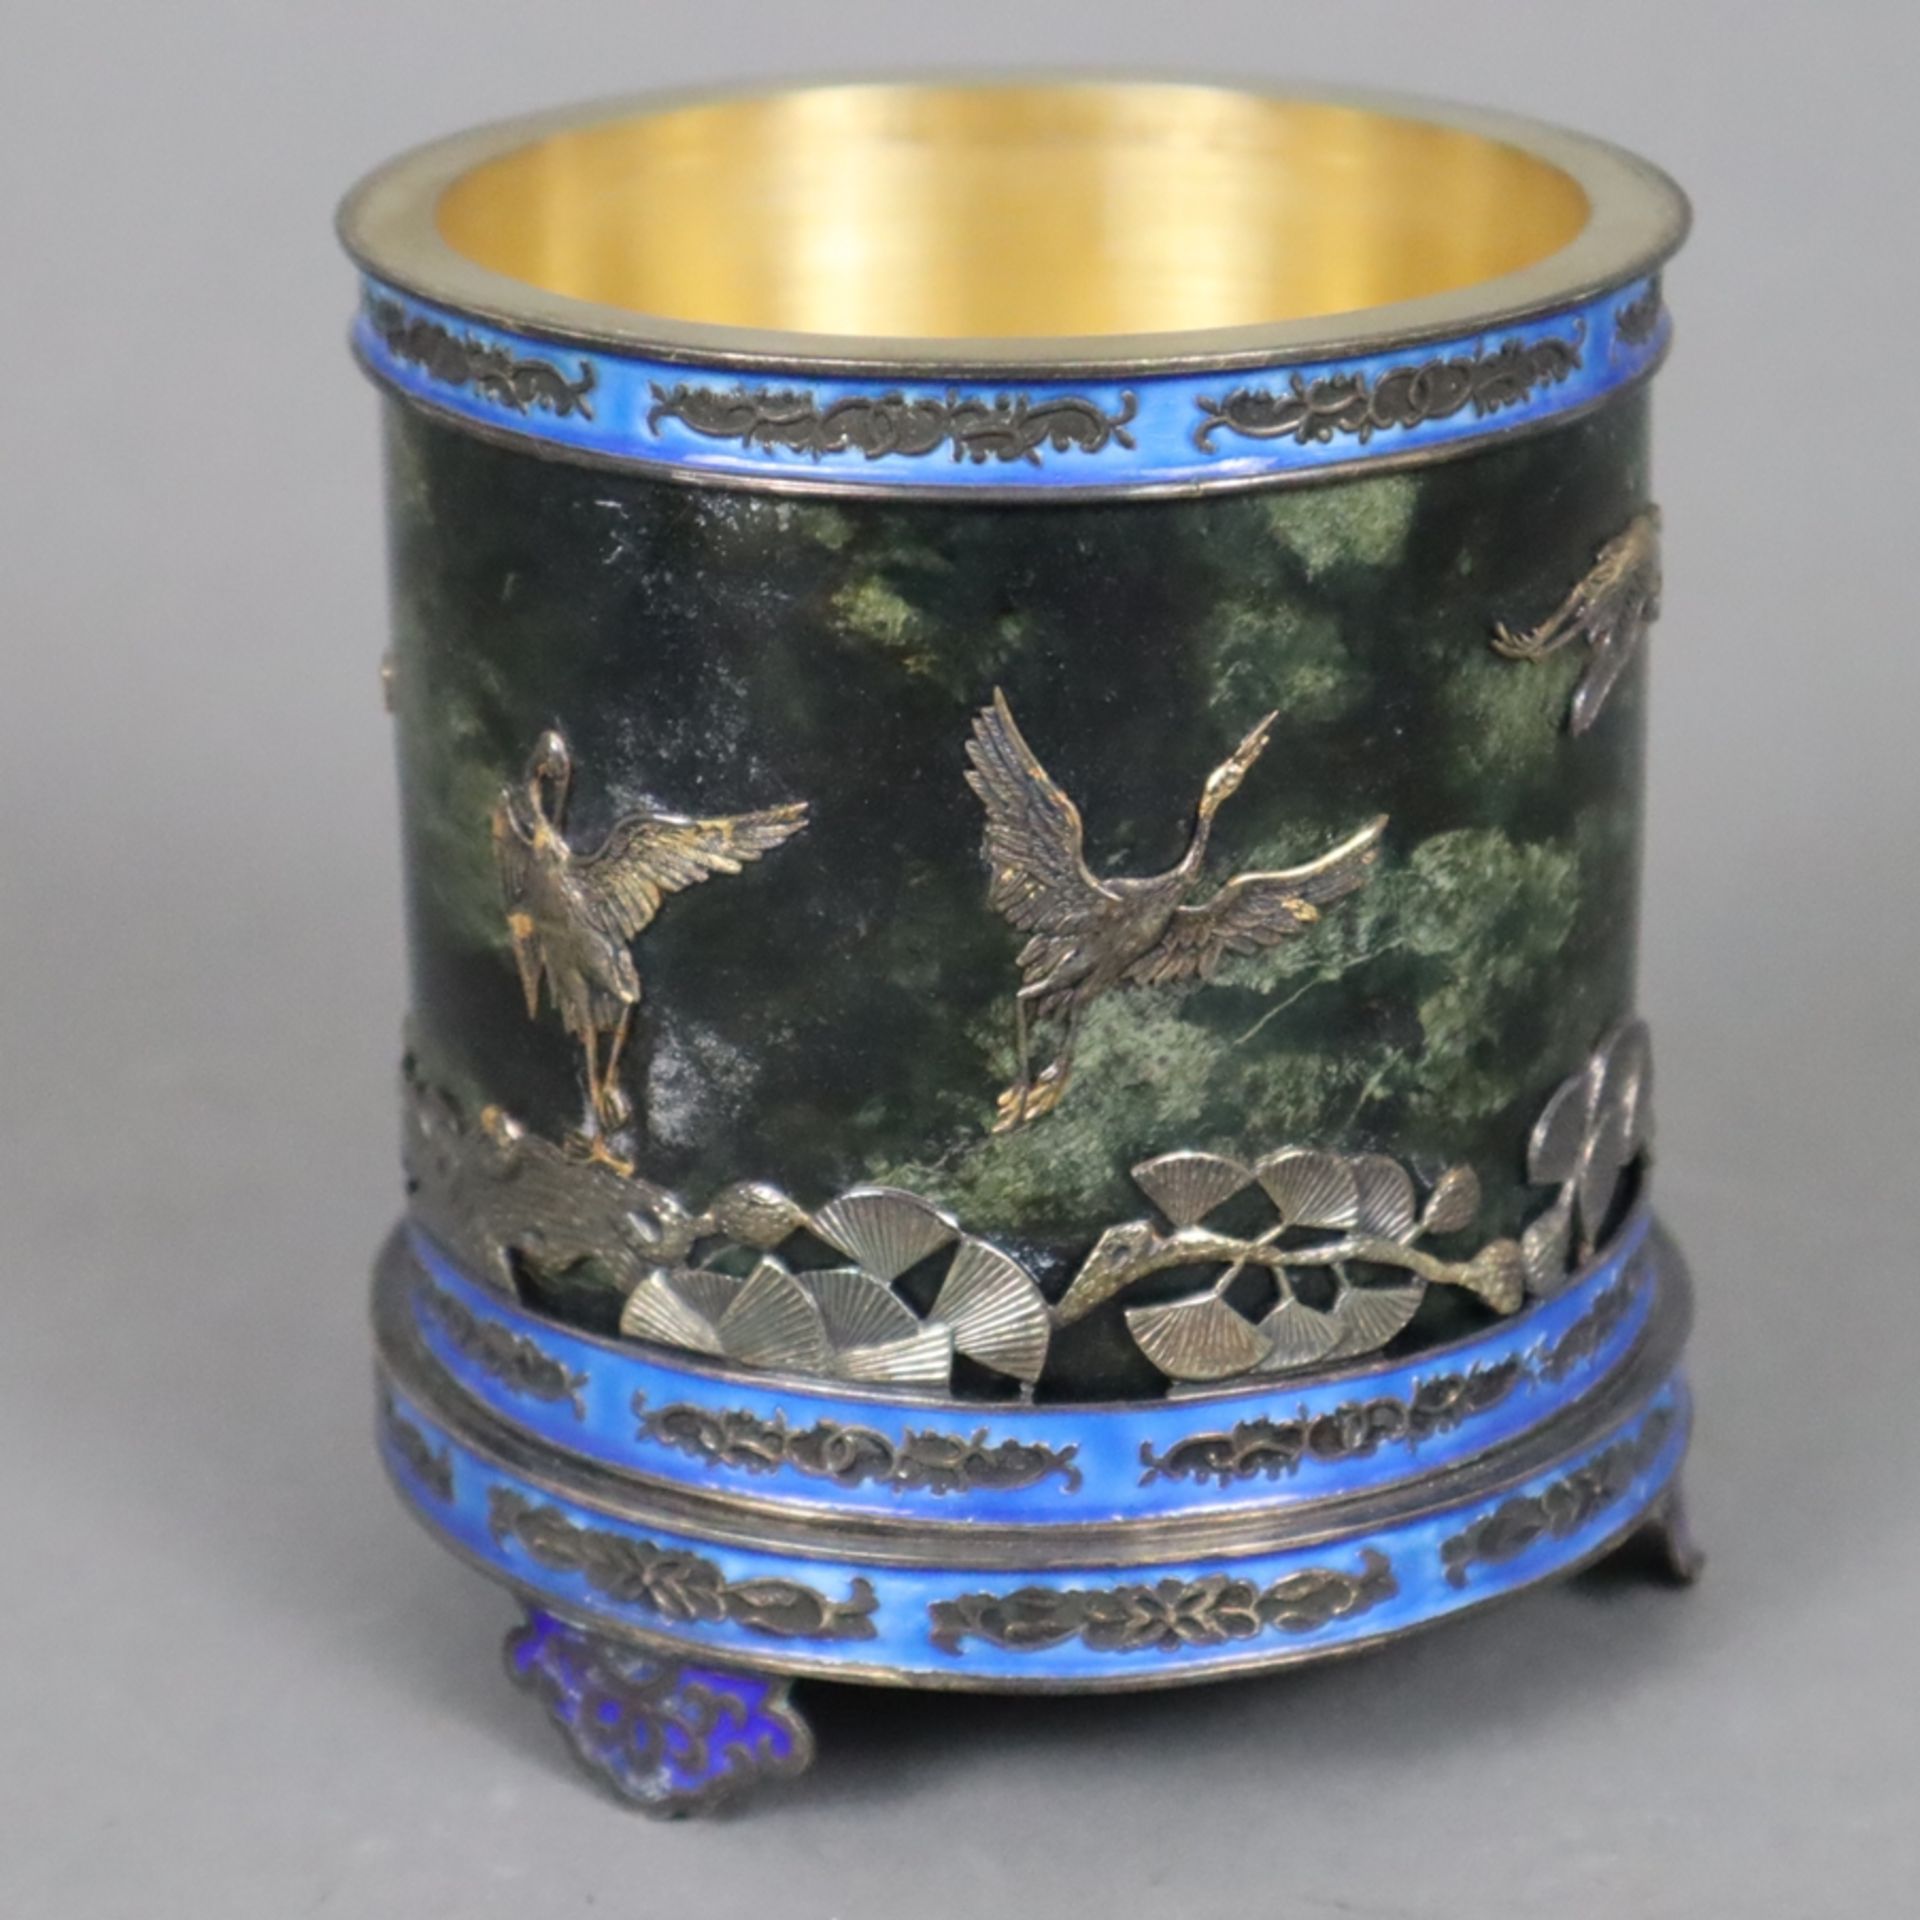 Deckeldose - China 20.Jh., Silber/Jade/Email, auf drei Füßen Zylinderform mit Stülpdeckel, Wandung - Image 7 of 11